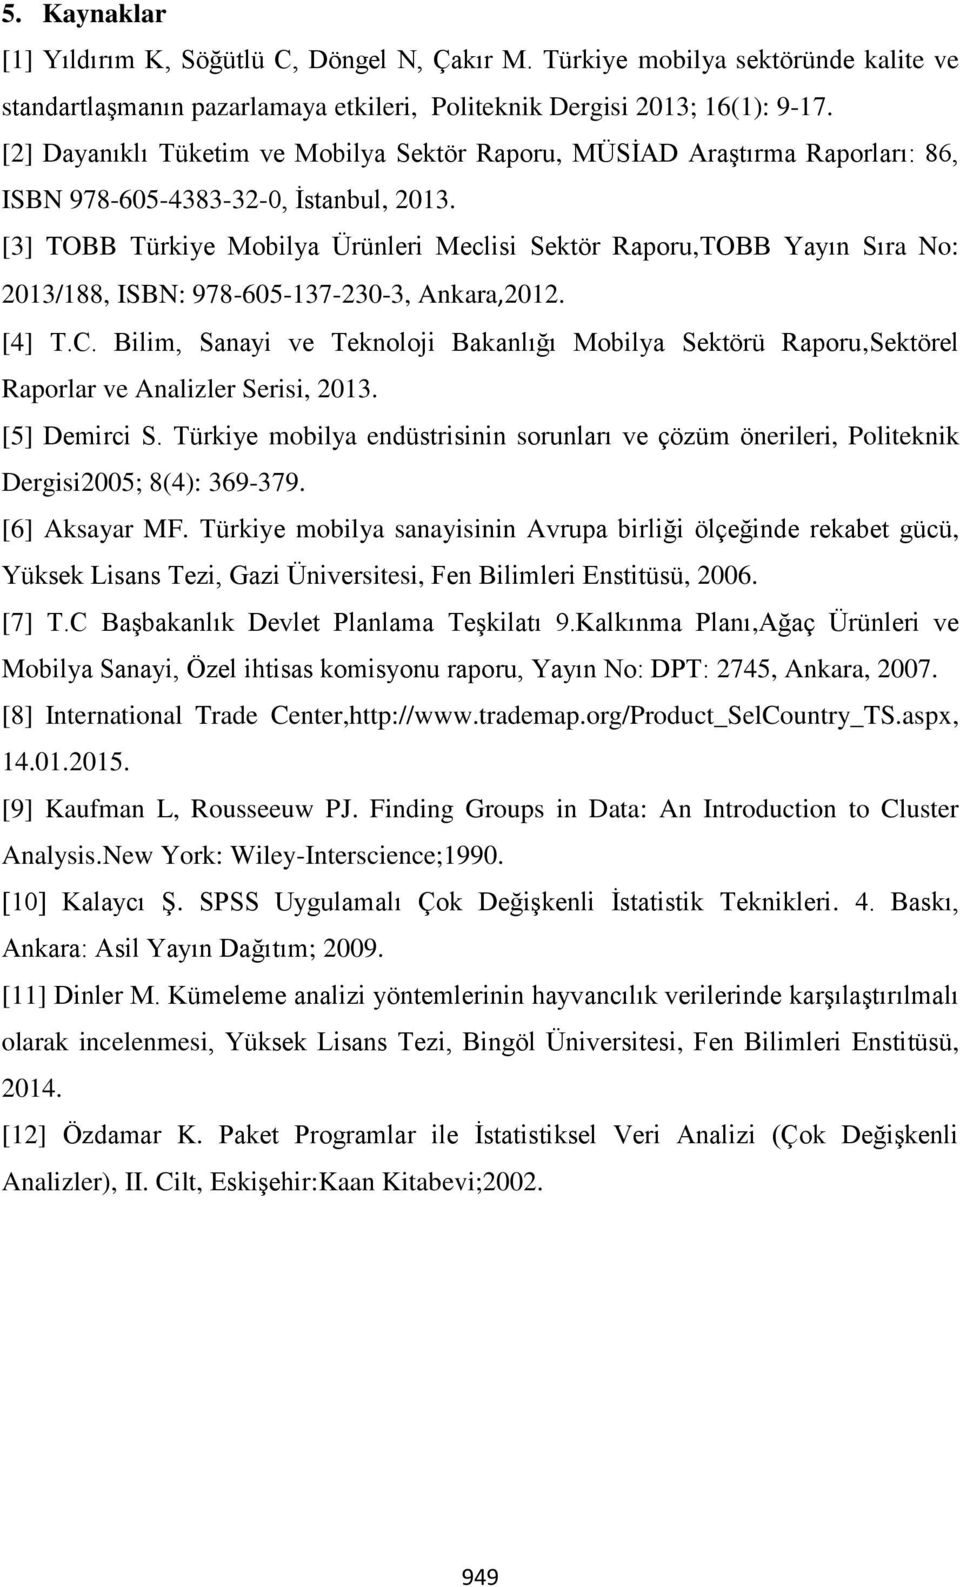 [3] TOBB Türkiye Mobilya Ürünleri Meclisi Sektör Raporu,TOBB Yayın Sıra No: 2013/188, ISBN: 978-605-137-230-3, Ankara,2012. [4] T.C.